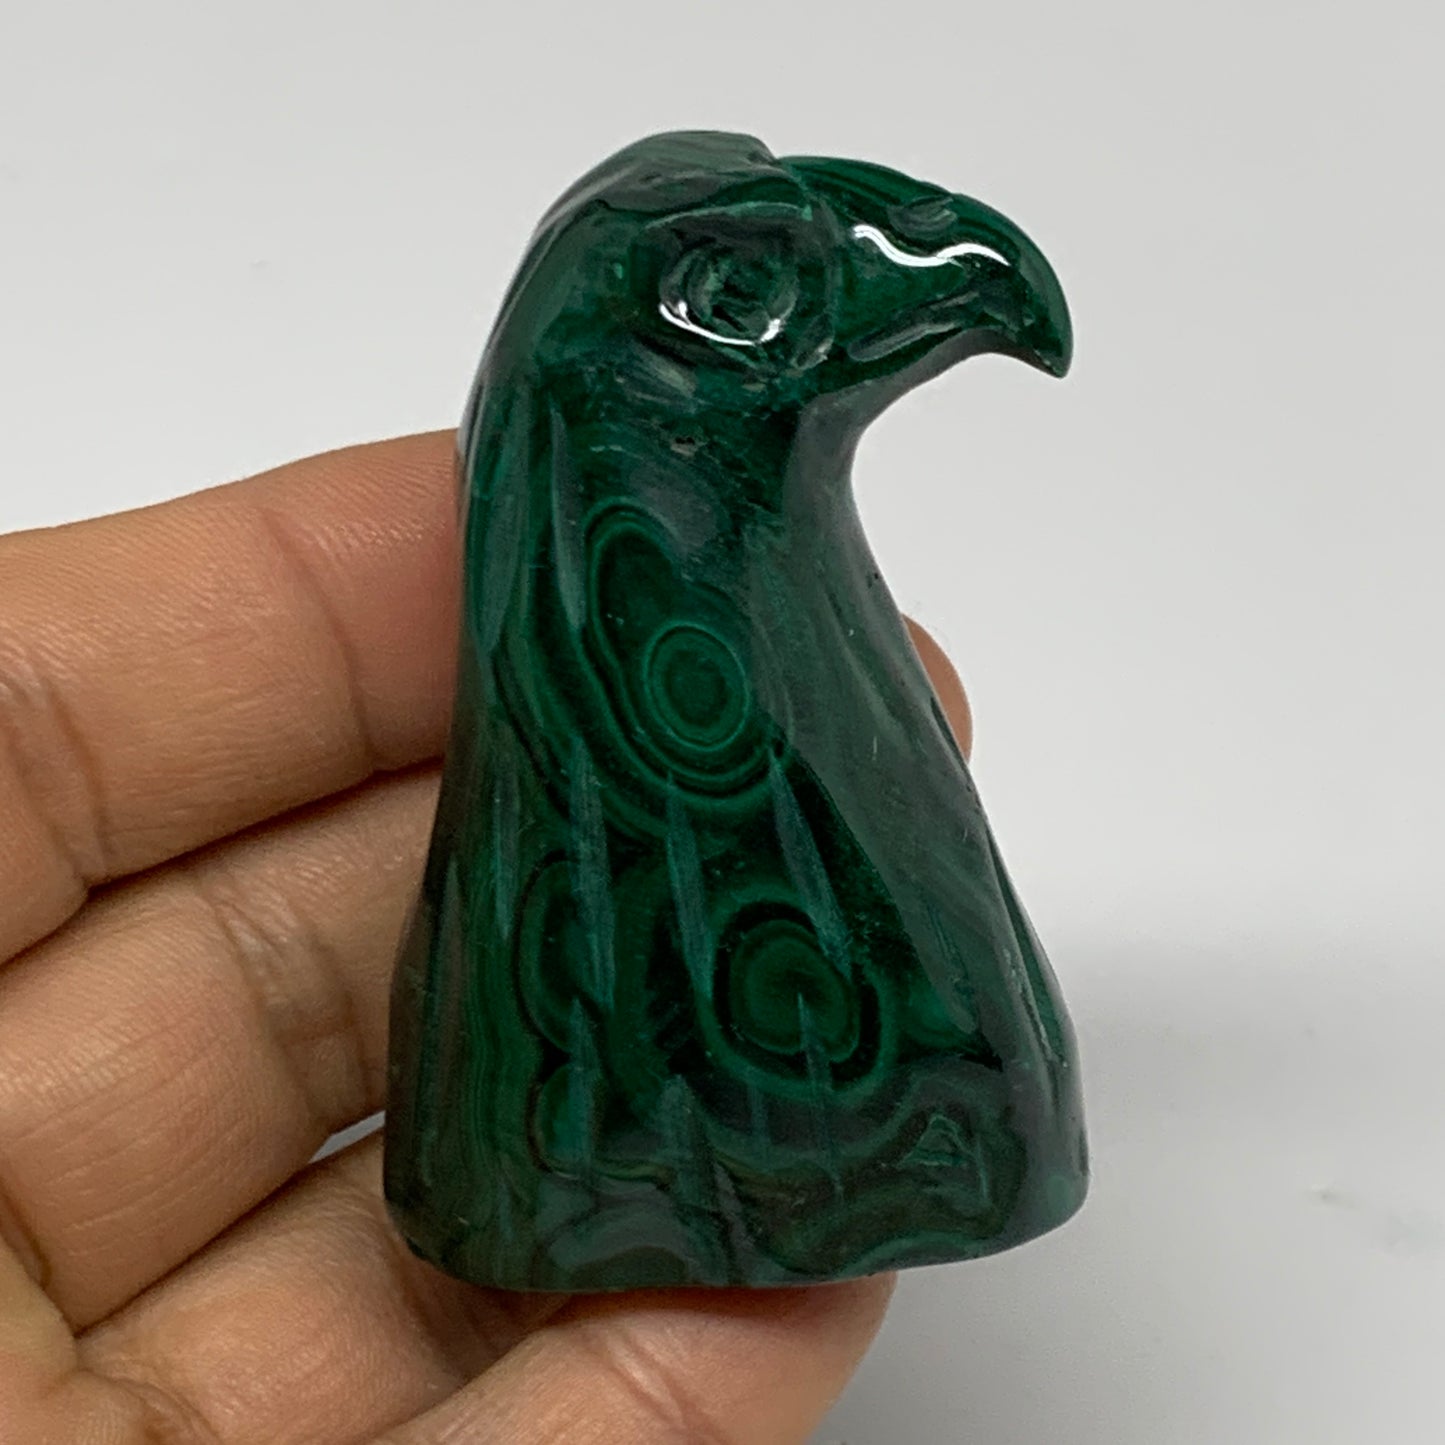 110g, 2.2"x1.4"x0.9" Natural Solid Malachite Eagle/Falcon Figurine @Congo, B3273